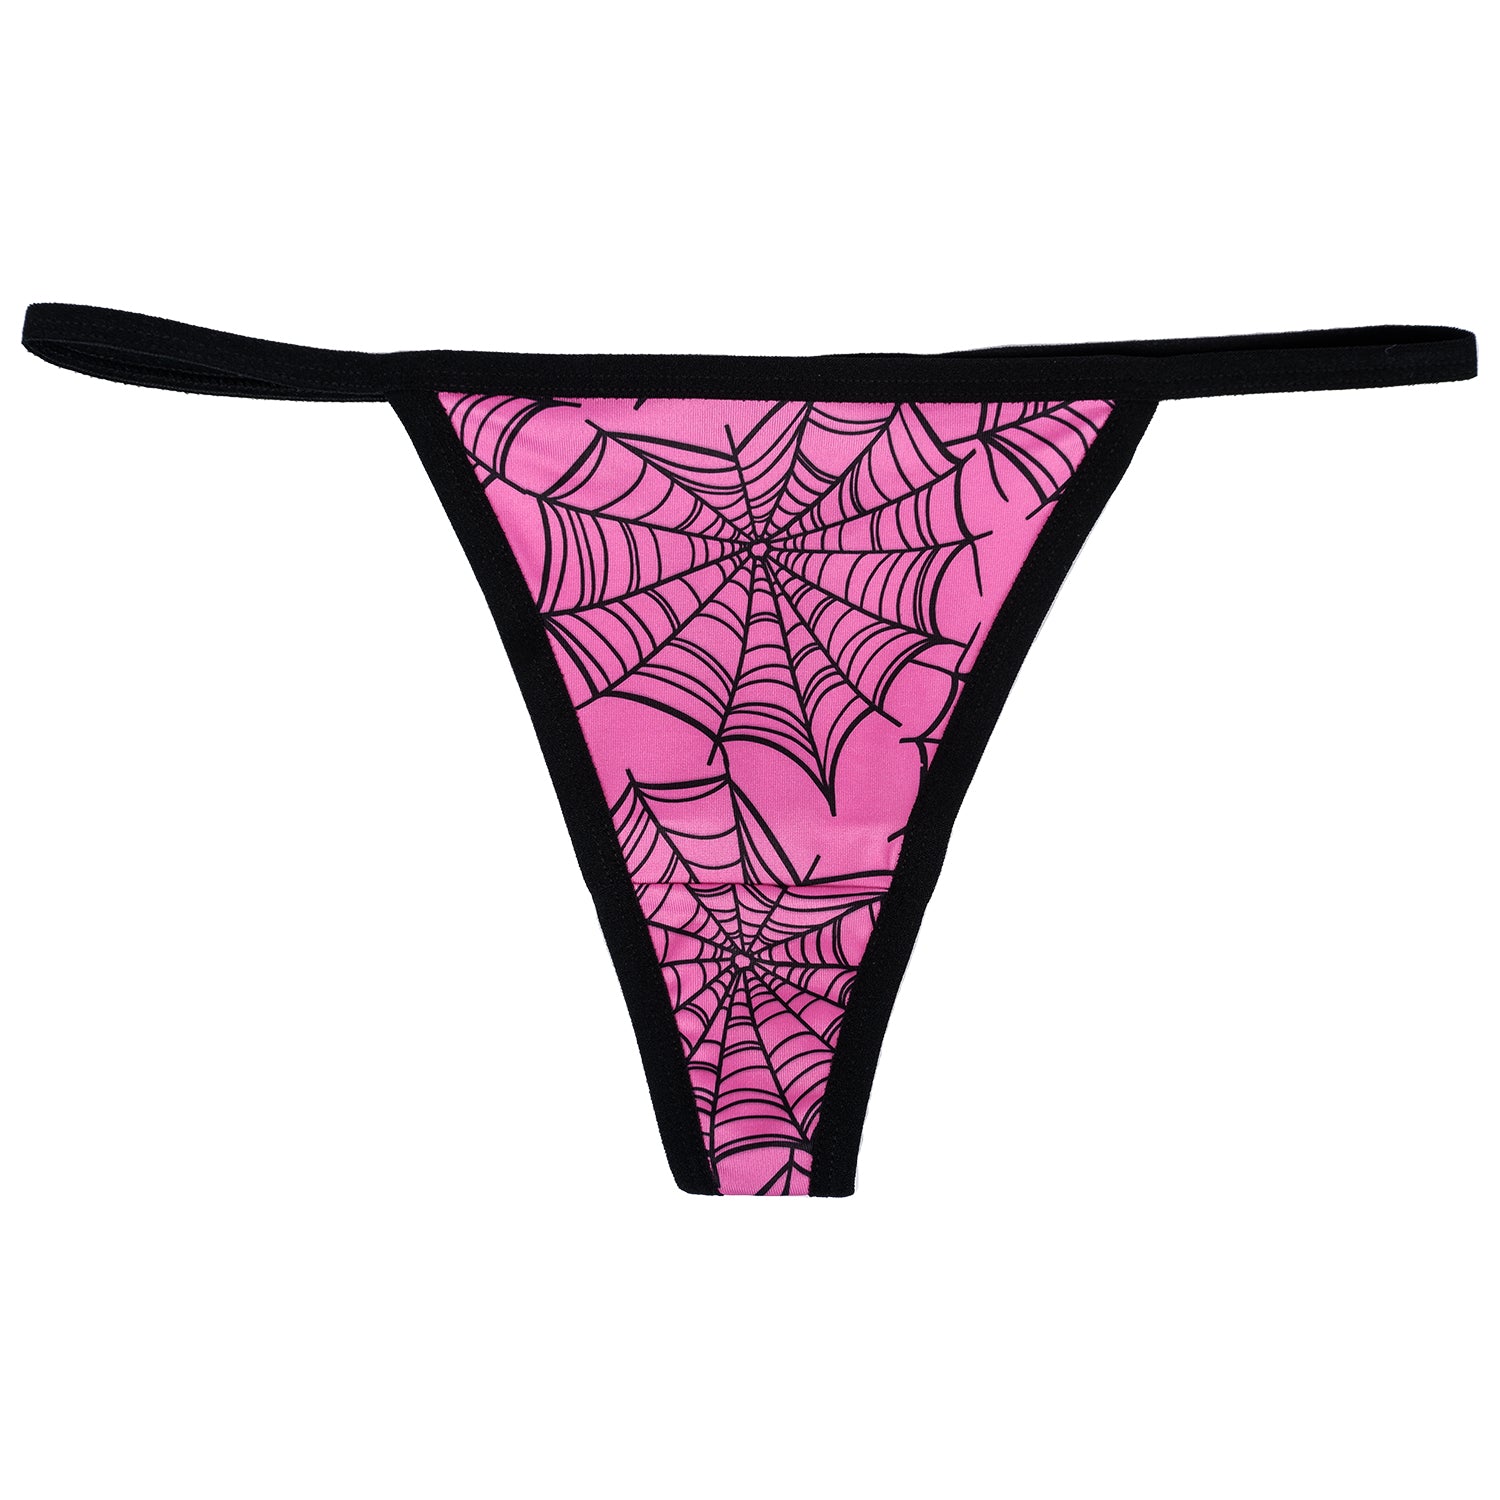 Shop Thongs & V-Strings for Panties Online